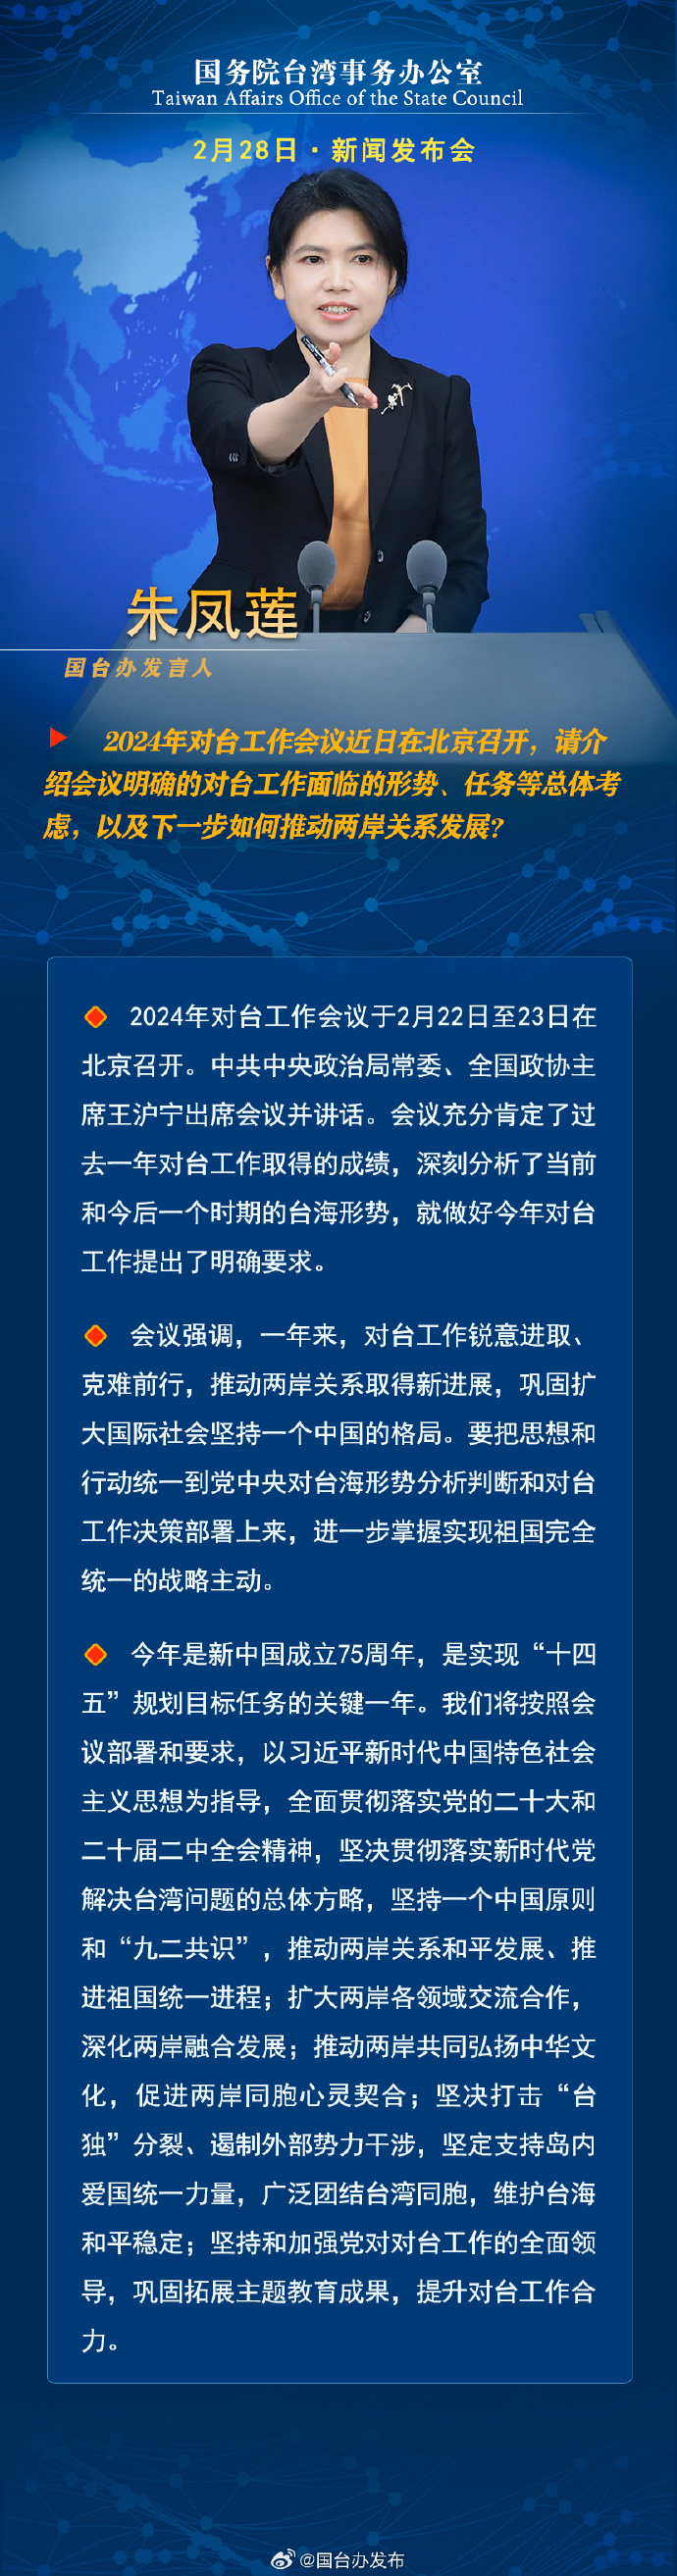 國務院台灣事務辦公室2月28日·新聞發佈會